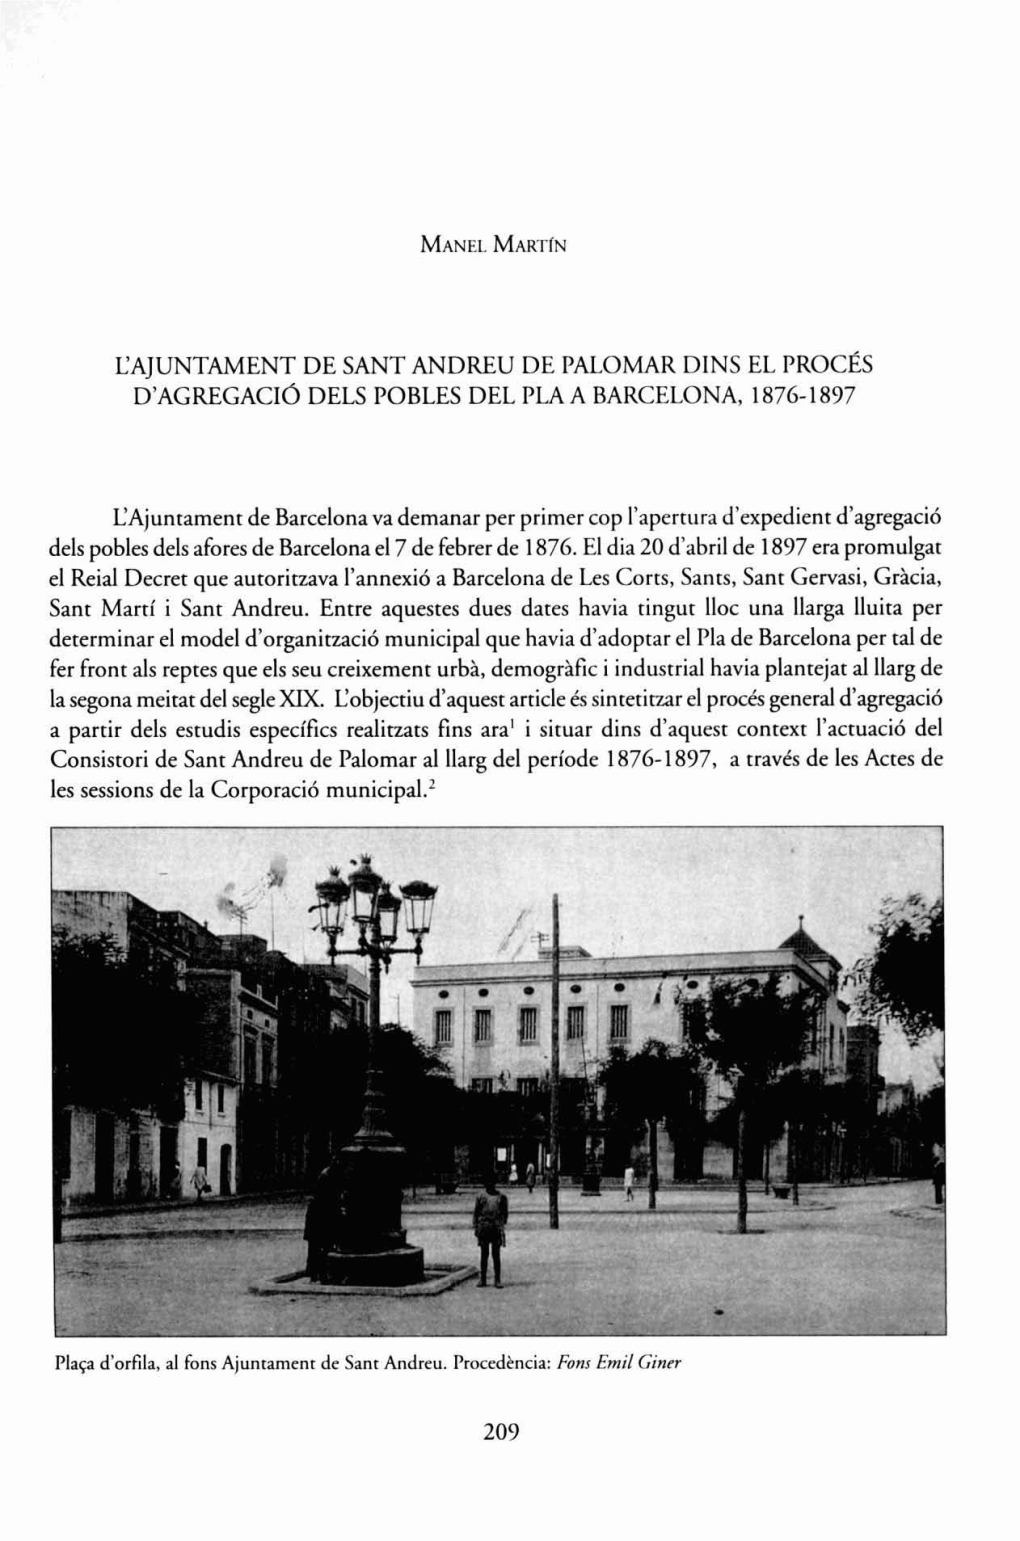 L'ajuntament De Sant Andreu De Palomar Dins El Procés D'agregacio Dels Pobles Del Pla a Barcelona, 1876-1 897